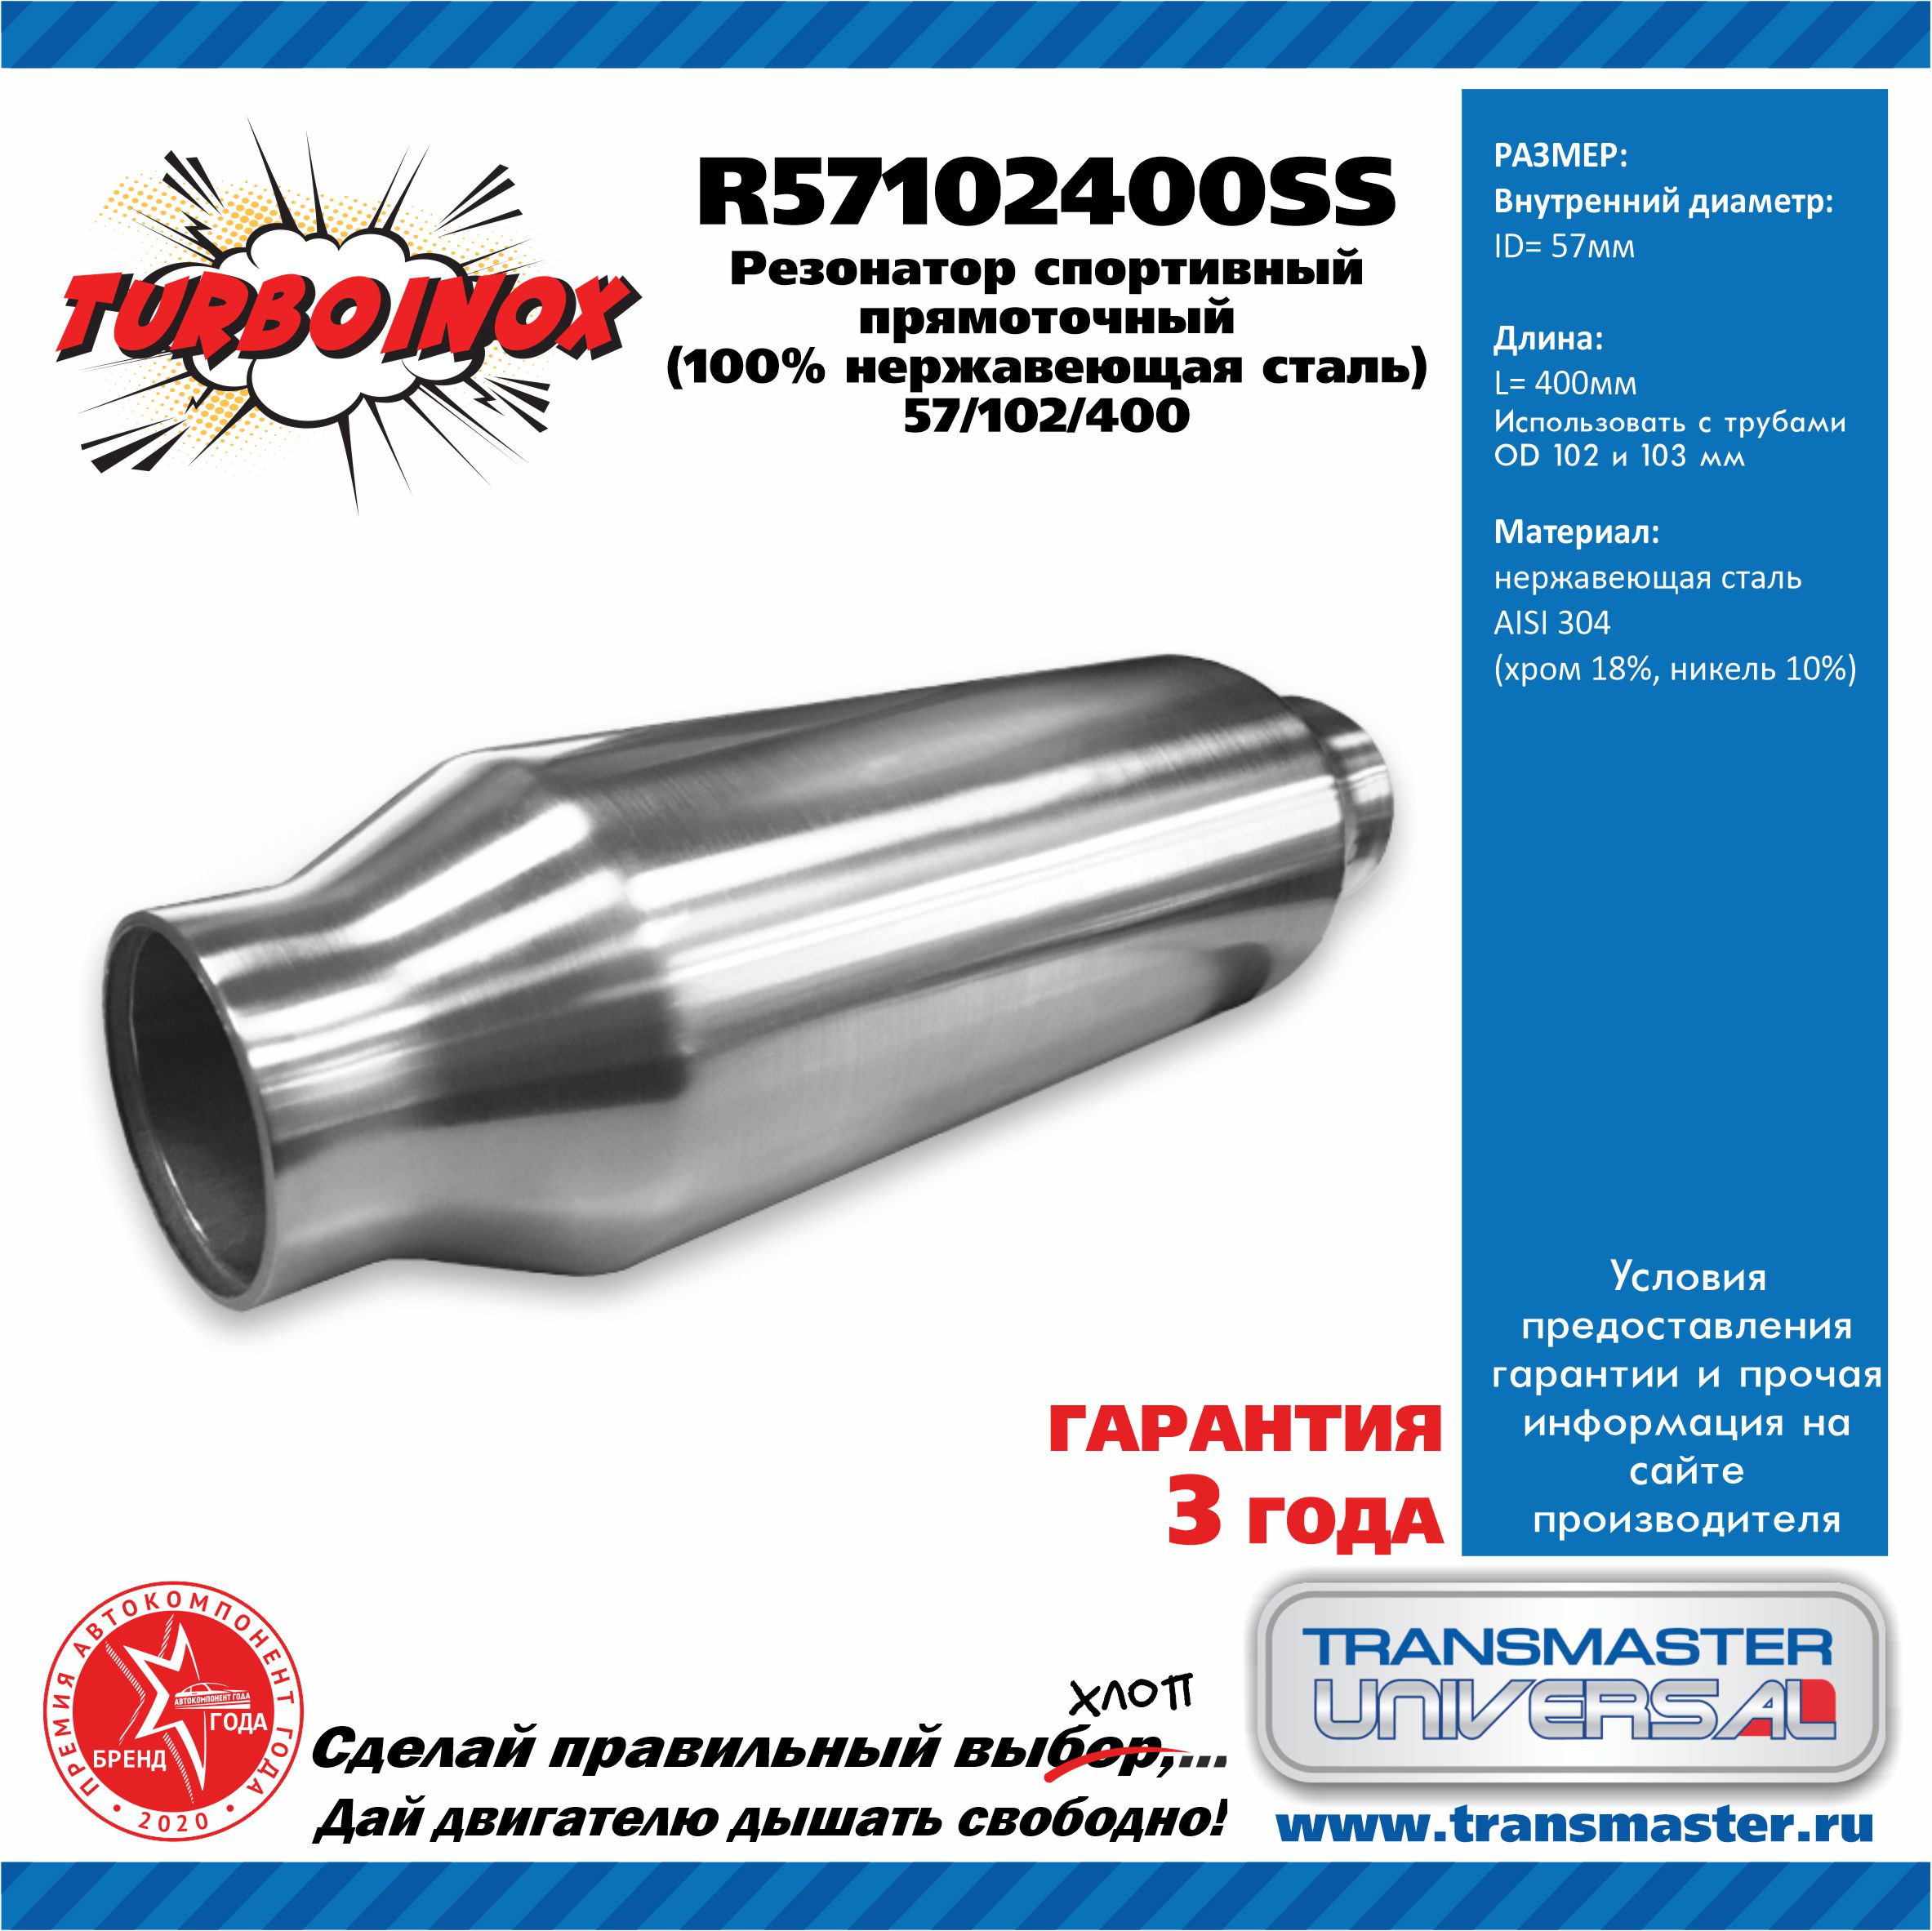 Резонатор спортивный прямоточный серия turboinox (100% нержавеющая сталь) - TRANSMASTER UNIVERSAL R57102400SS